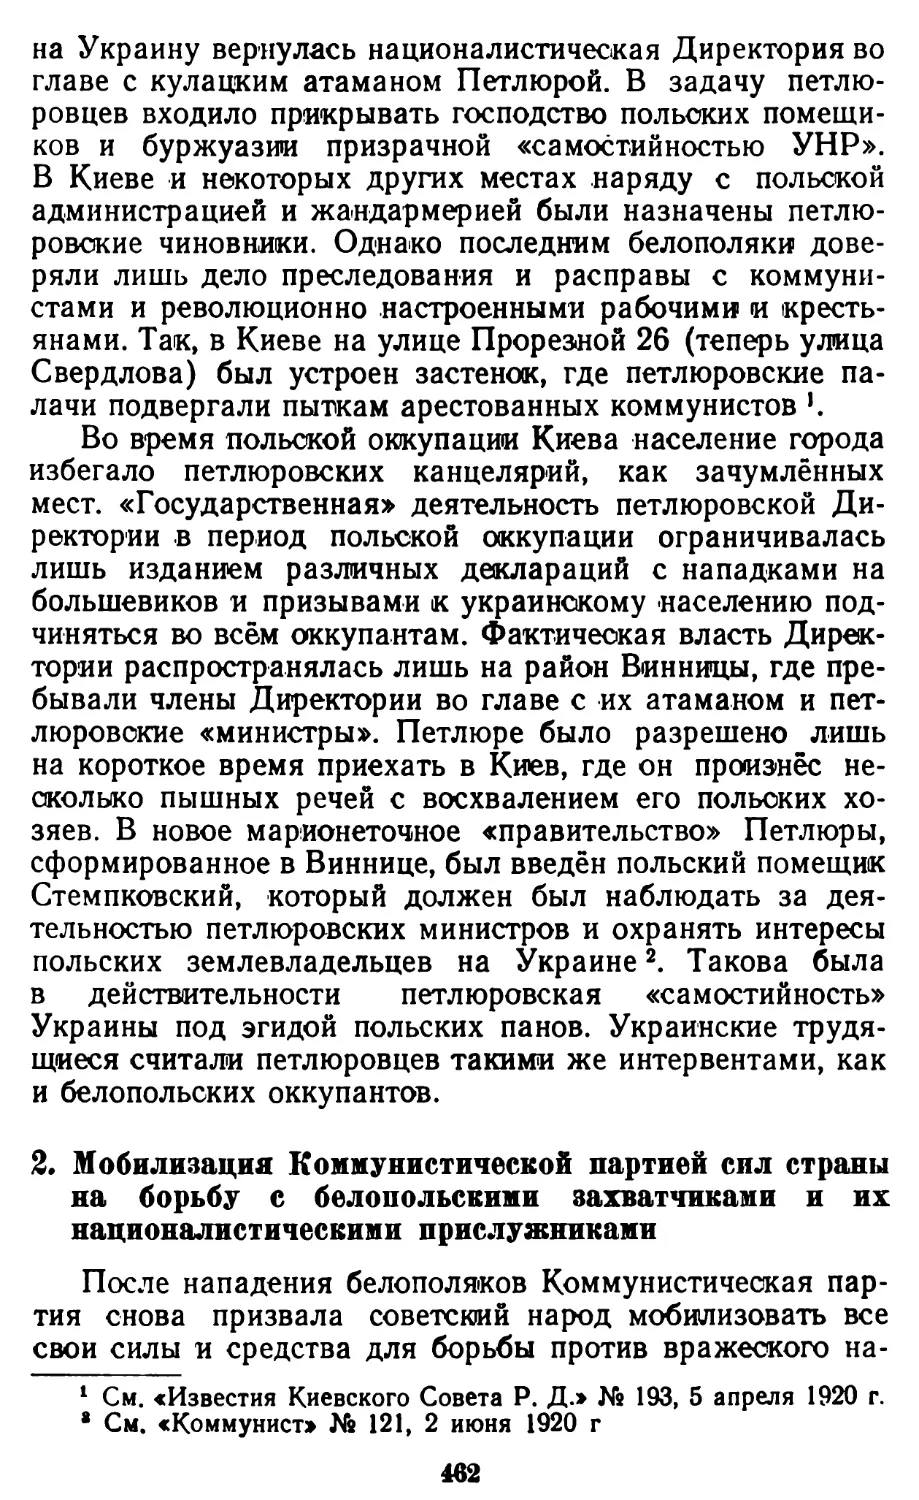 2. Мобилизация Коммунистической партией сил страны на борьбу с белопольскими захватчиками и их националистическими прислужниками